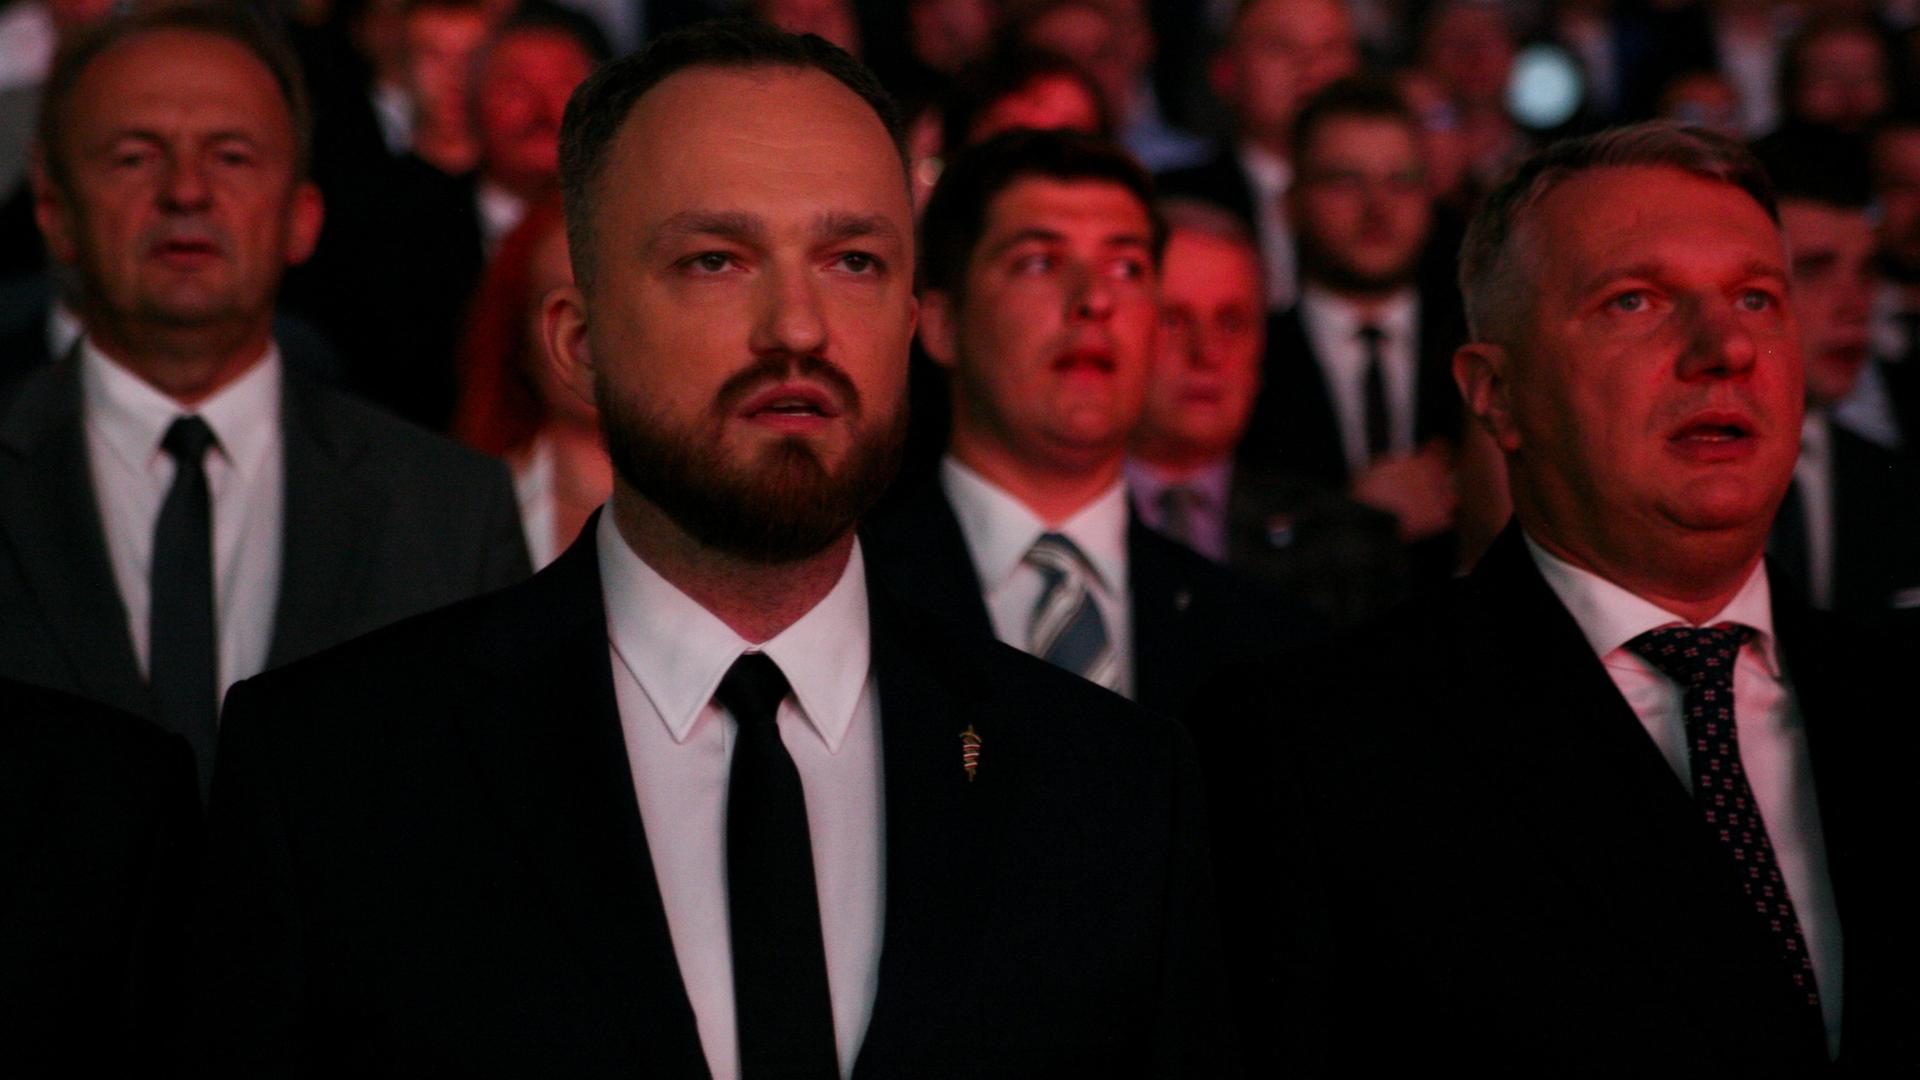 Die Führer der rechtsextremen polnischen Partei Konfederacja - Krzysztof Bosak und Slawomir Mentzen - bei einer Versammlung am 23. September in Kattowitz. 